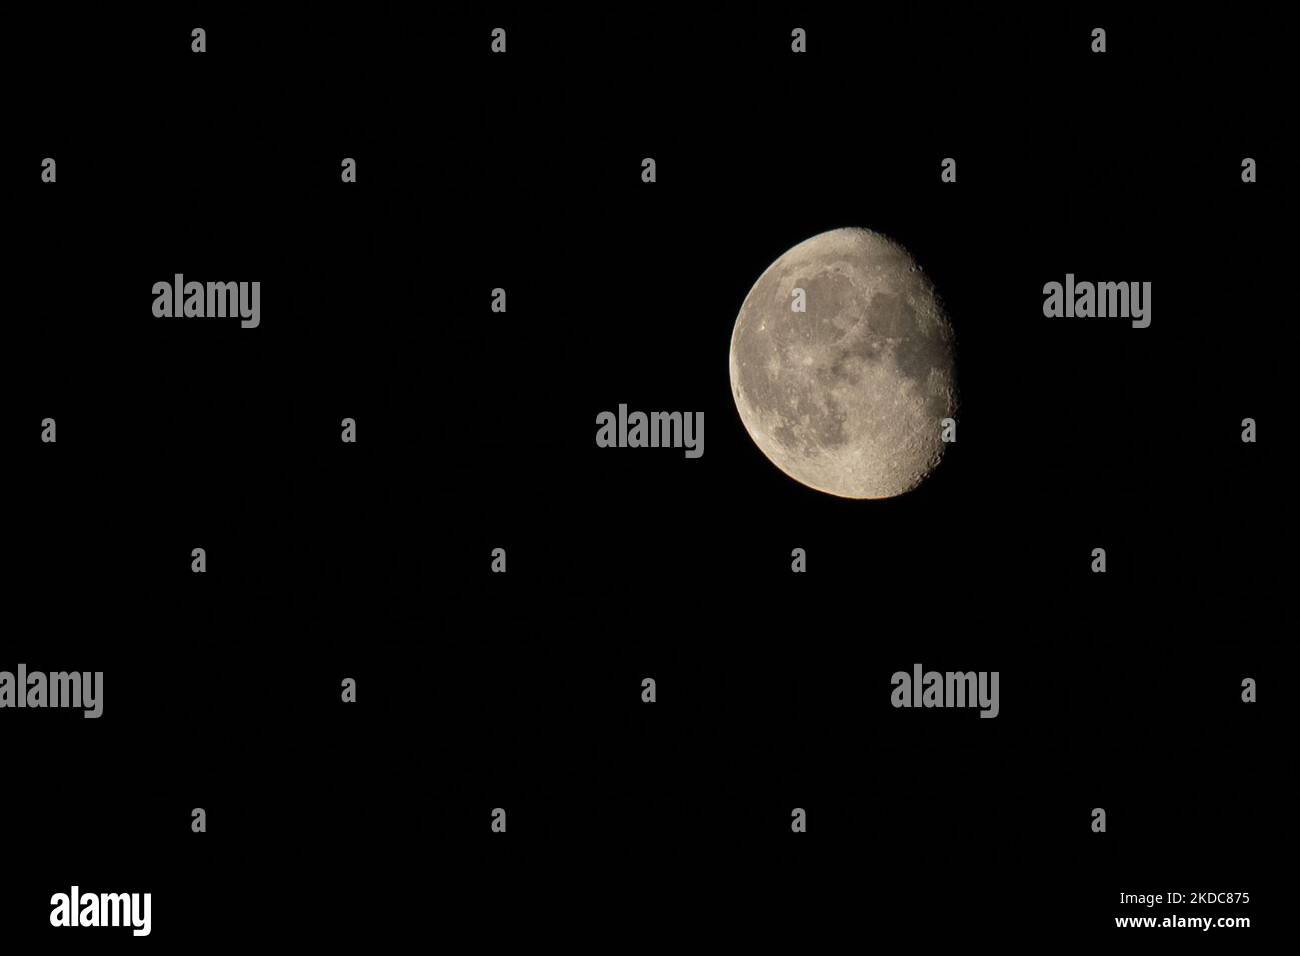 Une lune gibeuse déclinante est vue dans le ciel nocturne au-dessus de Varsovie, Pologne, le 18 juin 2022. La prochaine pleine lune en 2022 sera la lune de buck également connue sous le nom de lune de tonnerre. (Photo par STR/NurPhoto) Banque D'Images